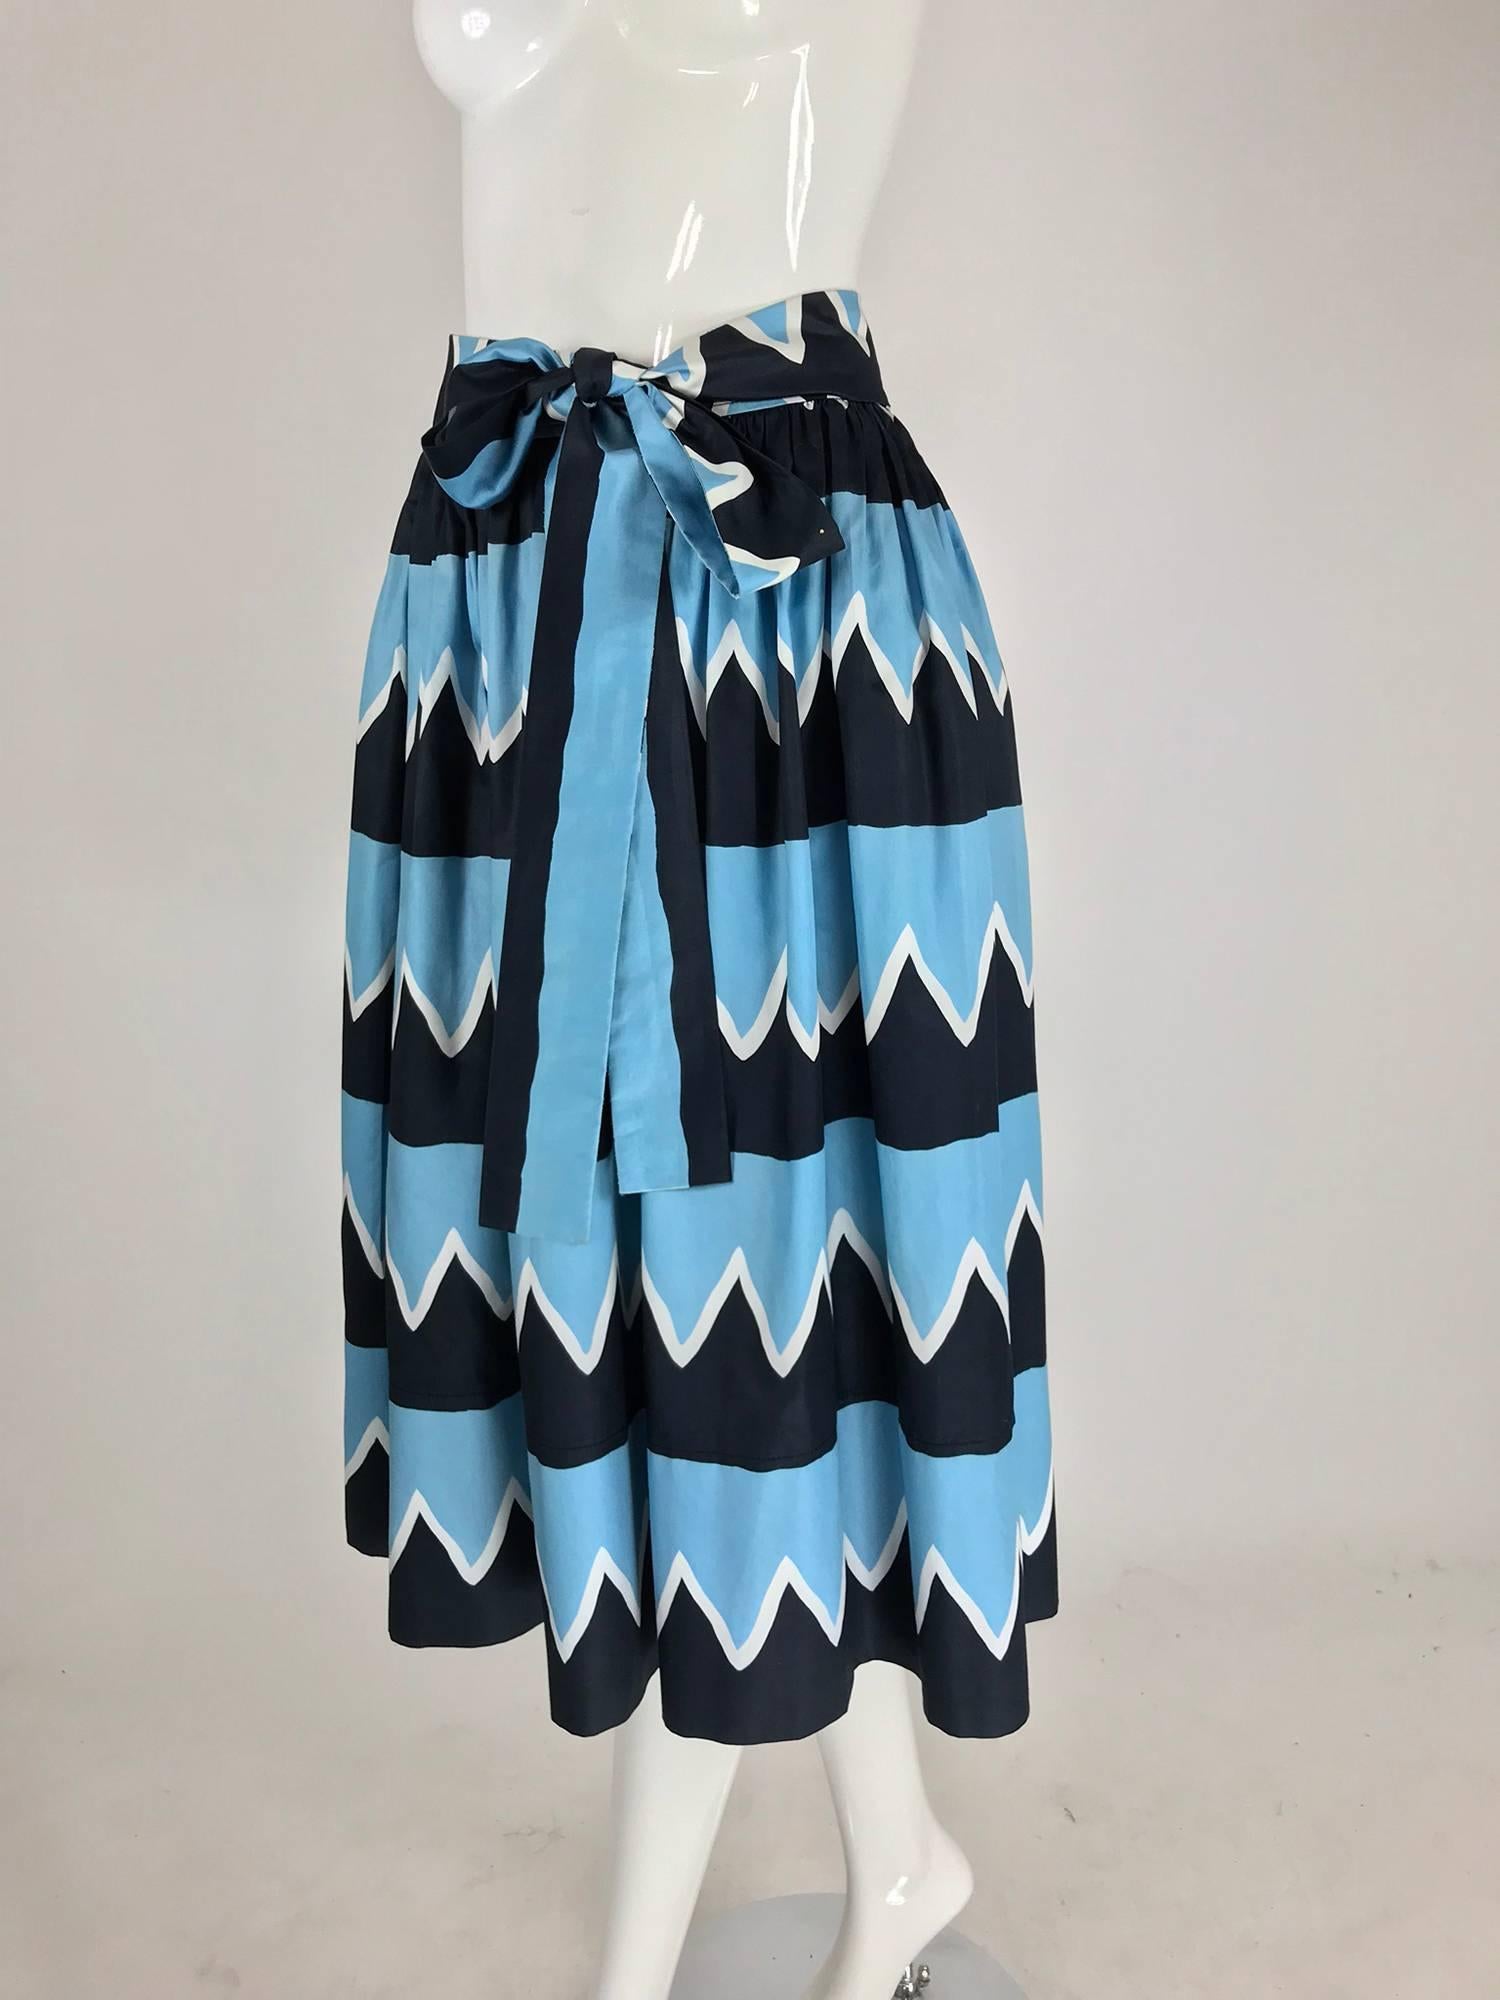 Yves Saint Laurent Iman worn documented cotton skirt, S / S 1980 6